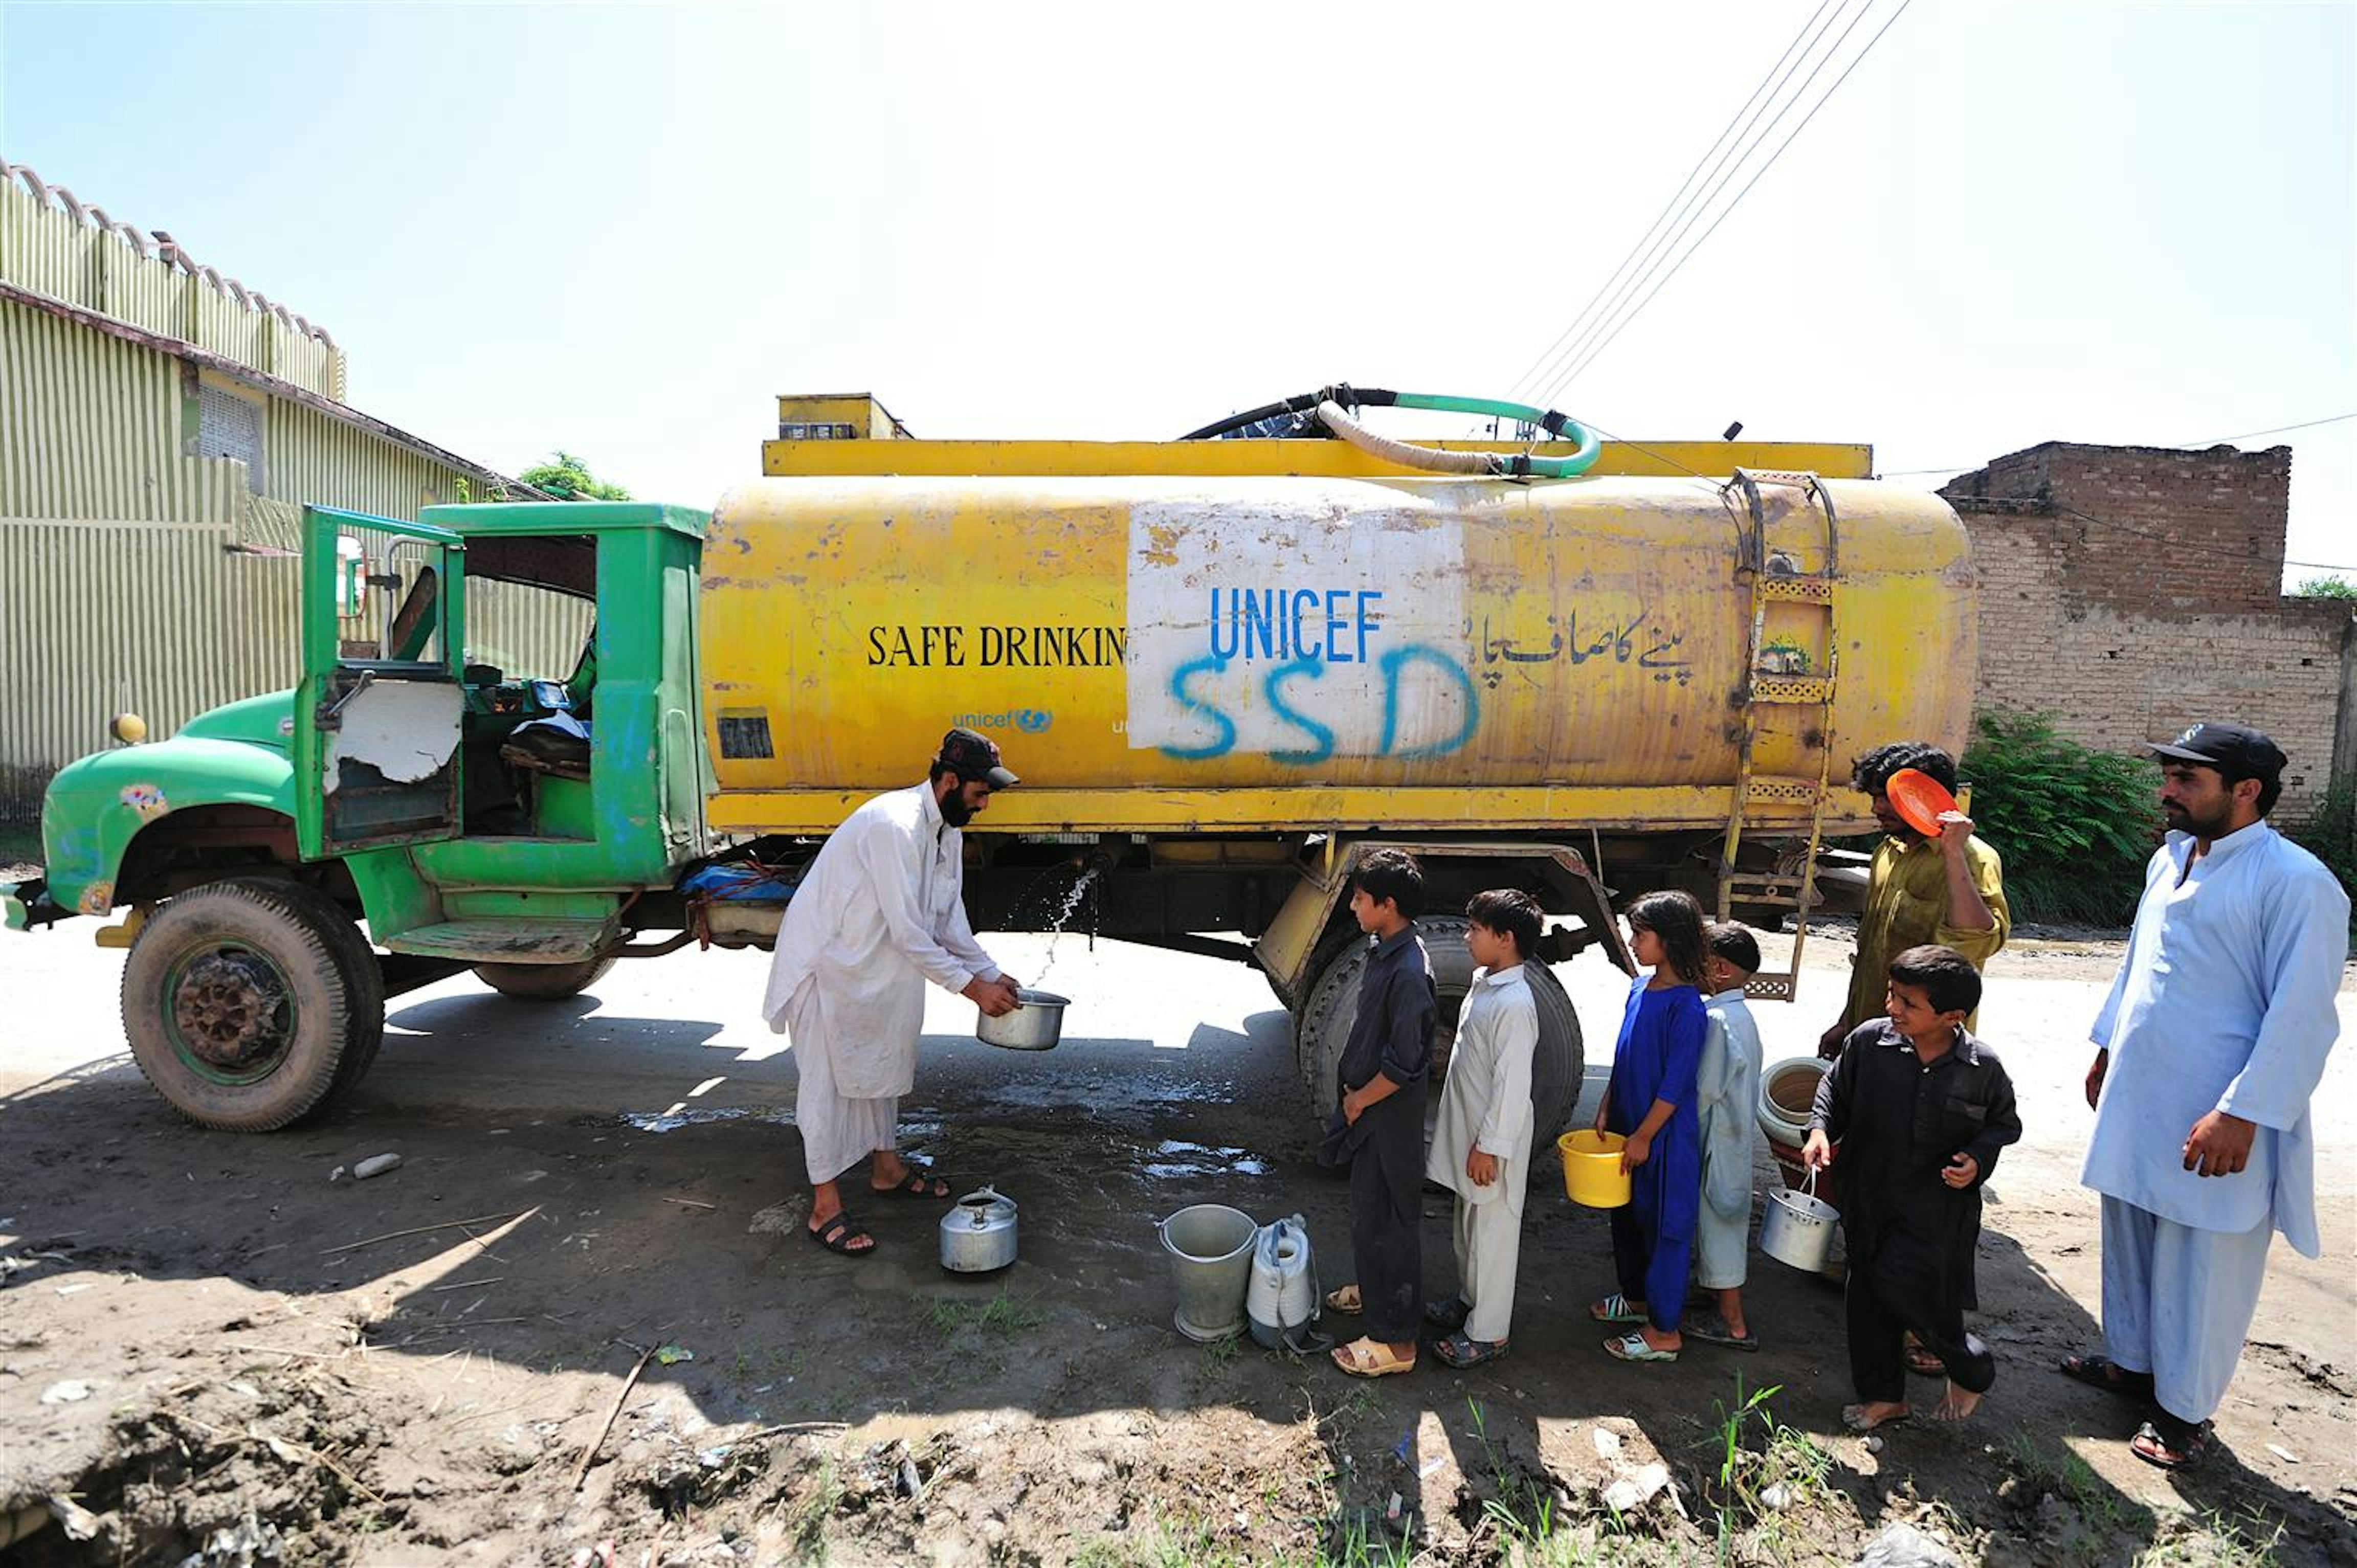 Un camion cisterna dell'UNICEF fornisce acqua potabile alla popolazione©UNICEF/NYHQ2010/1558/ZAK